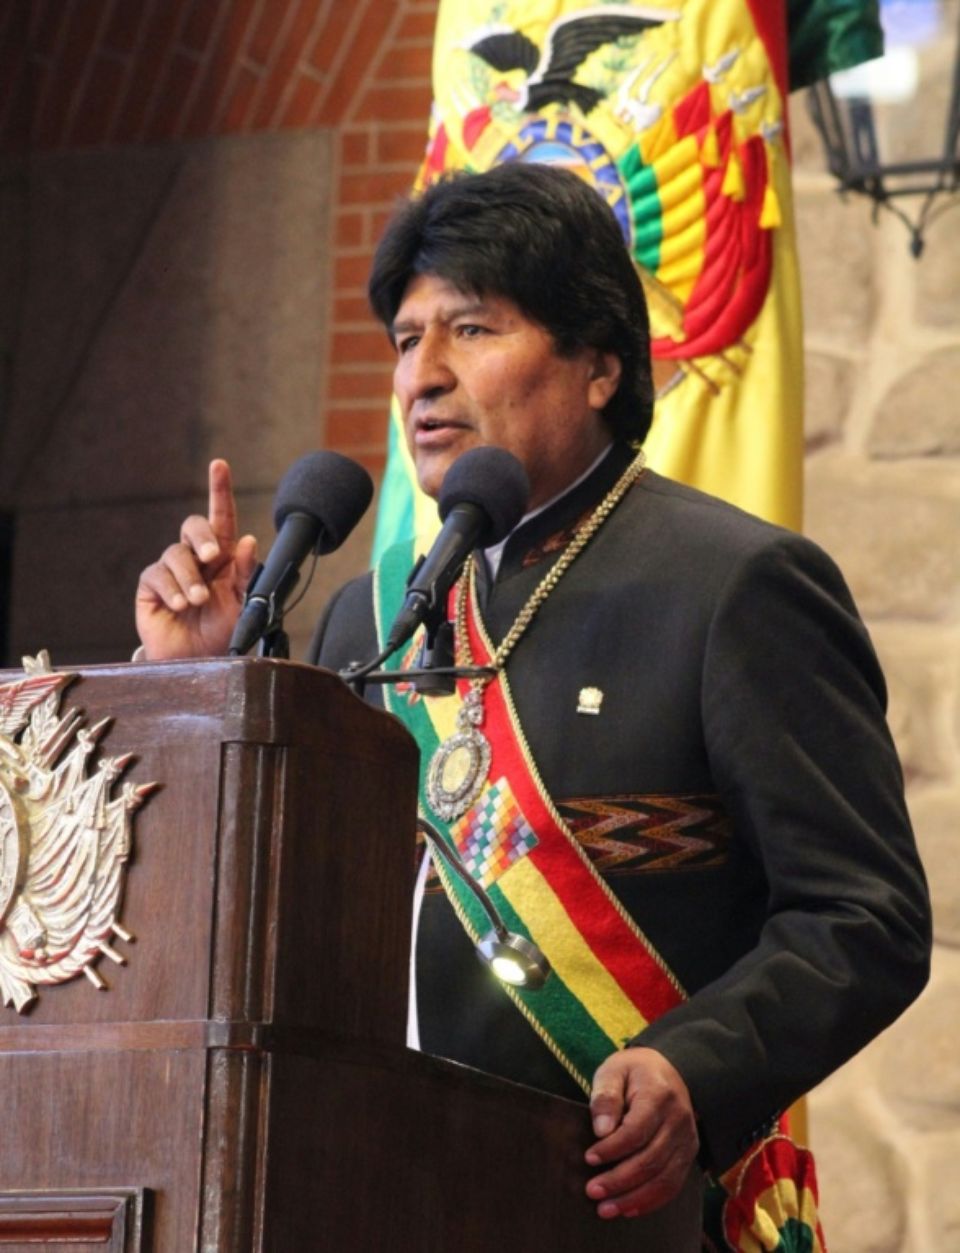 Bolivie: la médaille présidentielle brièvement volée, son garde visitait des maisons closes